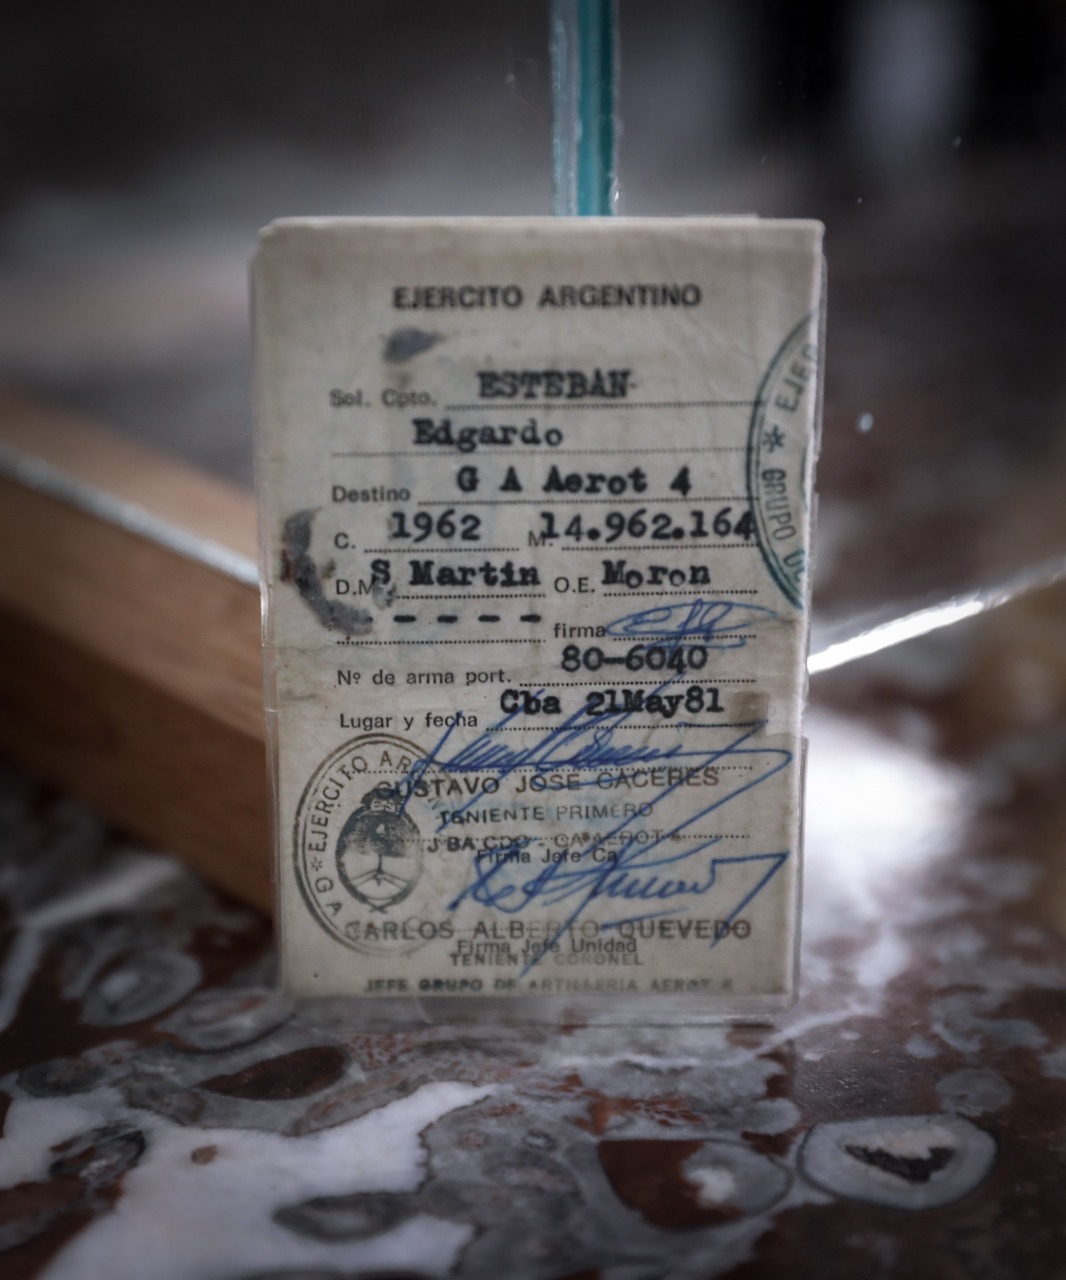 Se restituyeron los documentos personales a Edgardo Esteban, sustraídos durante la guerra de Malvinas